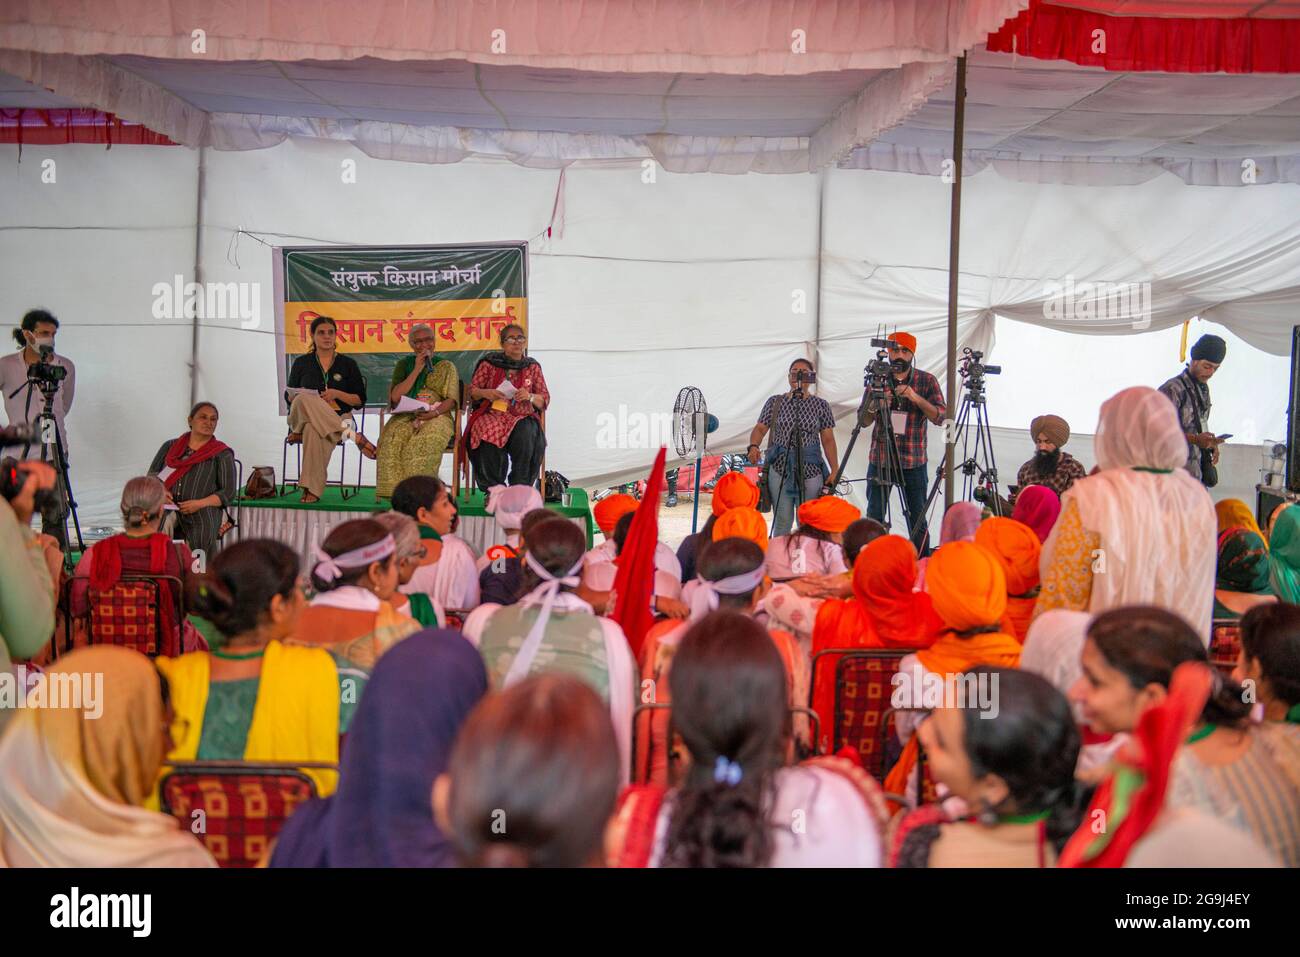 Neu-Delhi, Indien. Juli 2021. Eine Gruppe von Frauen und die Aktivistin Medha Patkar (Plattform) führen das laufende "All Women Kisan Sansad" im Jantar Mantar in Neu-Delhi durch.die Demonstranten begannen am Montag das ‘Kisan Sansad (bauernparlament) im Jantar Mantar, als die Agitation gegen die drei zentralen Agrargesetze in ihre acht Monate eintrat. Heute reflektiert der Mahila Kisan Sansad die Schlüsselrolle, die Frauen in der indischen Landwirtschaft spielen, und ihre kritische Rolle auch in der laufenden Bewegung. Kredit: SOPA Images Limited/Alamy Live Nachrichten Stockfoto